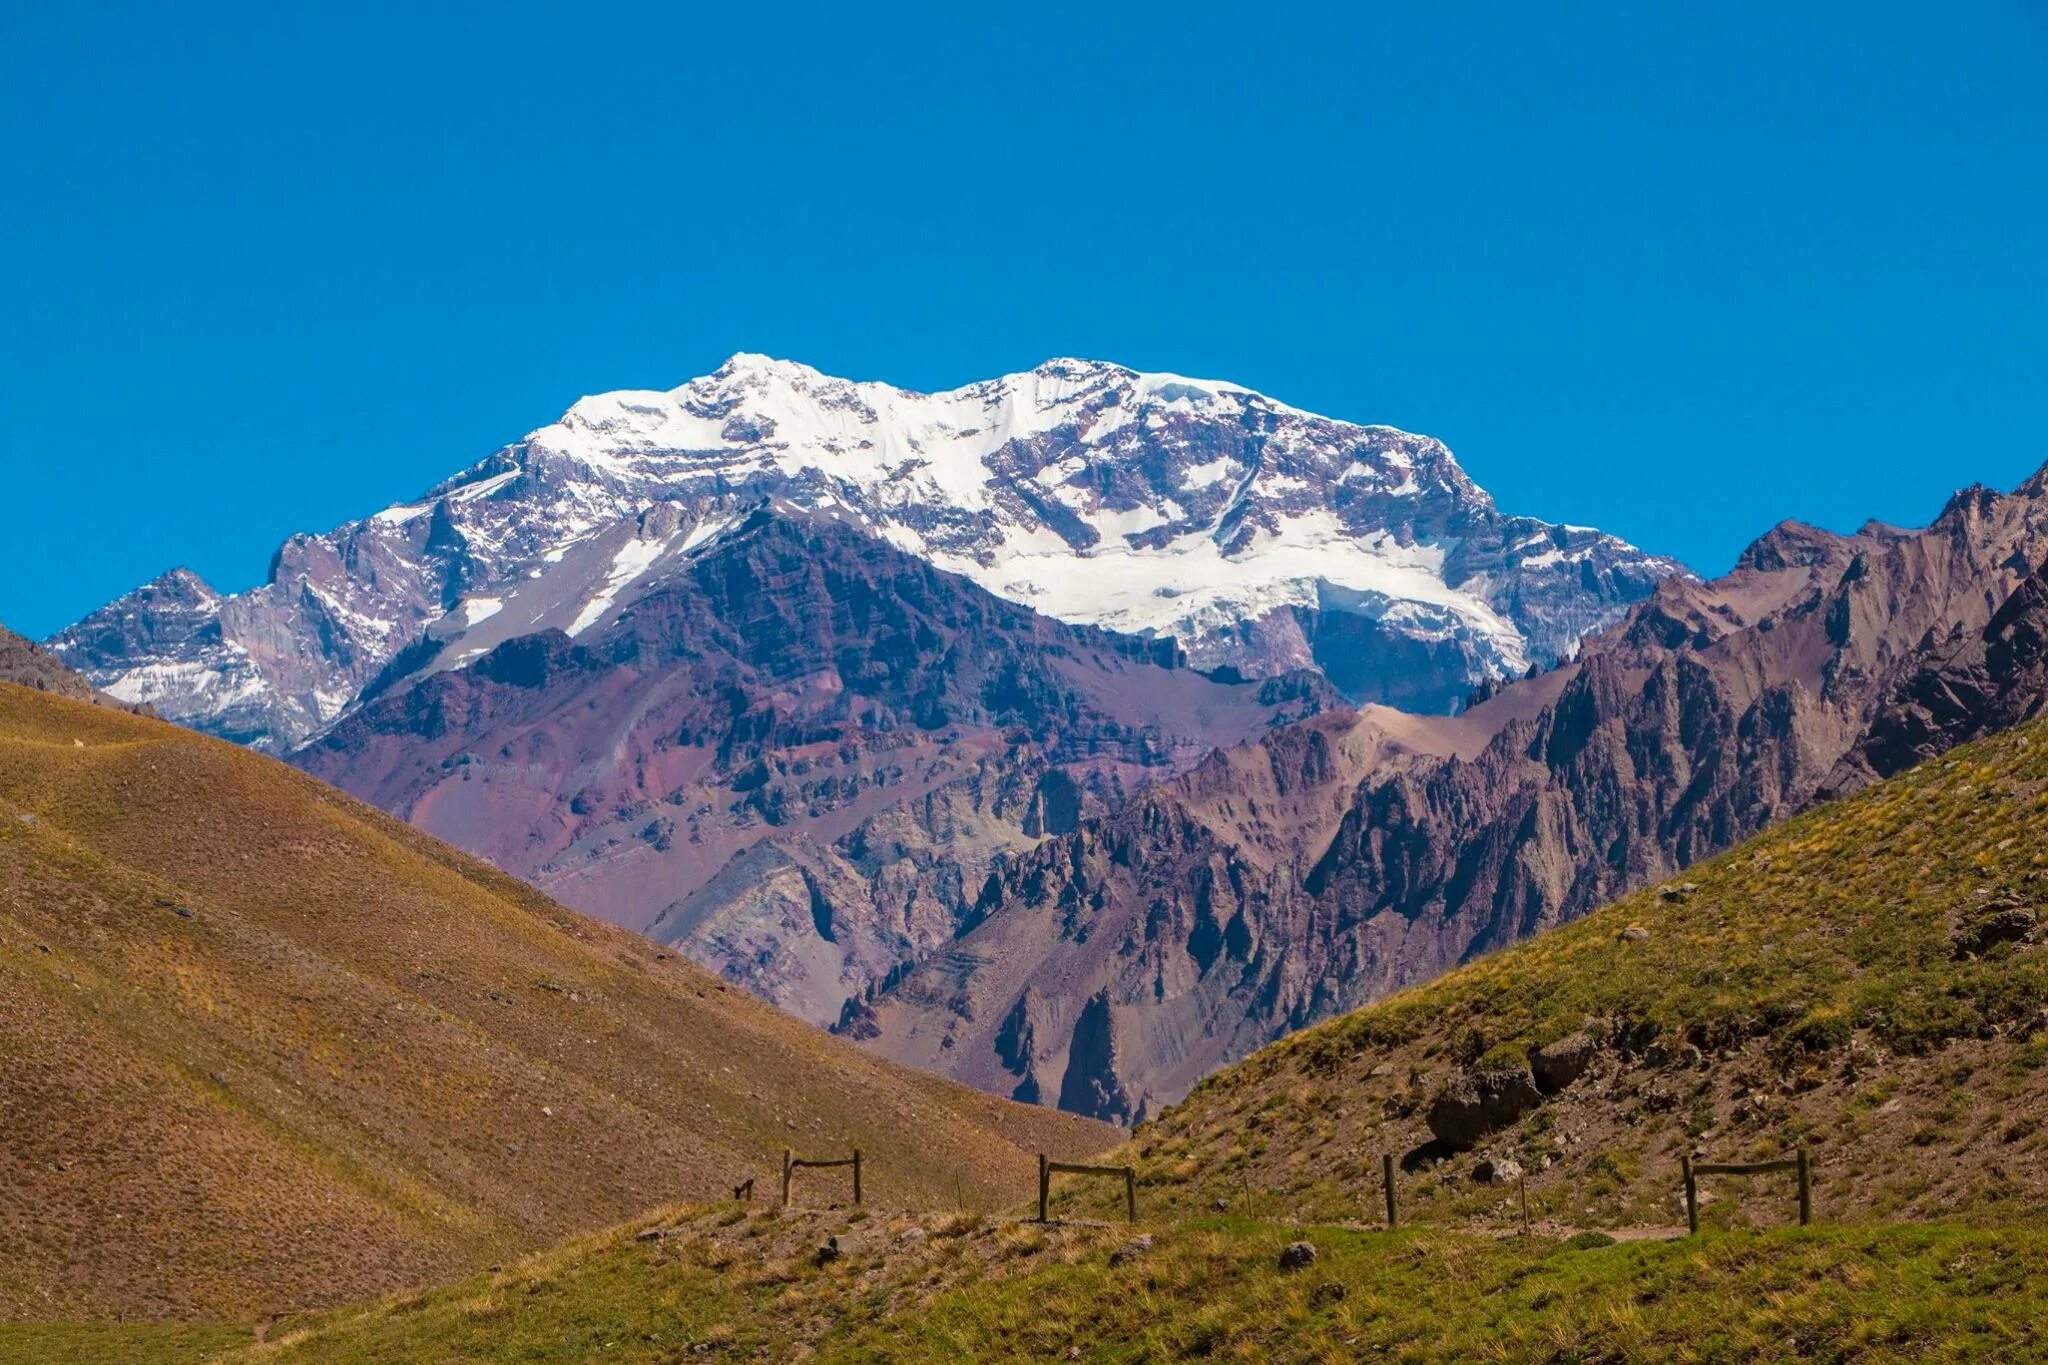 Высшая точка горной системы южной америки. Гора Анды гора Аконкагуа. Южная Америка Аконкагуа Аргентина. Горы Южной Америки Анды и горы Аконкагуа. Самая высокая вершина - гора Аконкагуа, 6960 м.